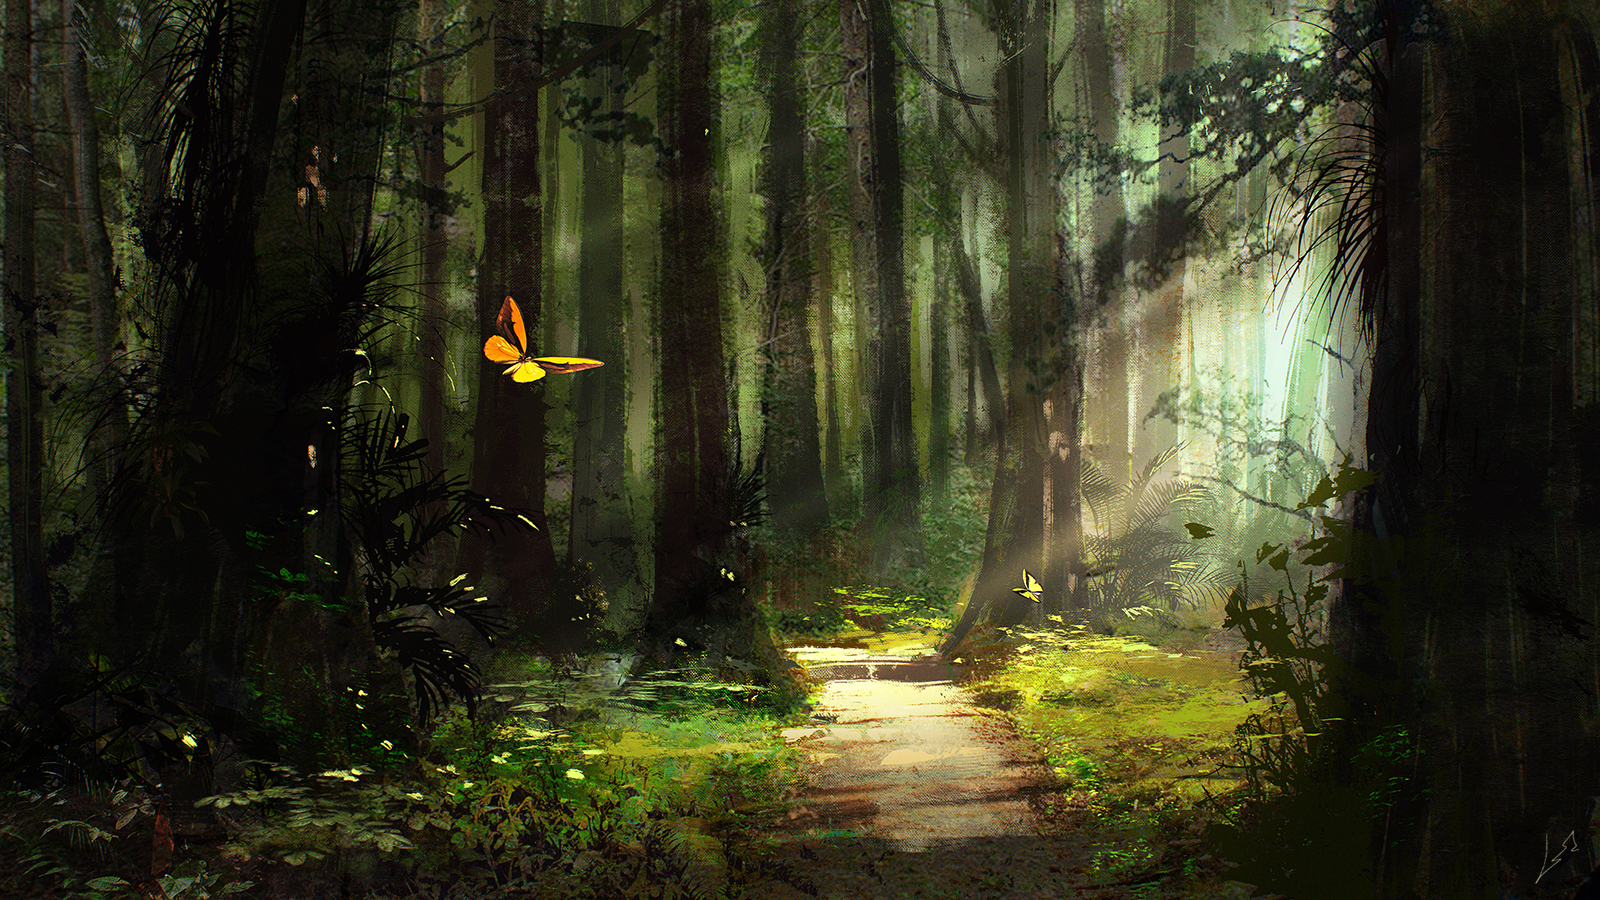 Sunlight on Butterfly in Forest by Kirill Khrol